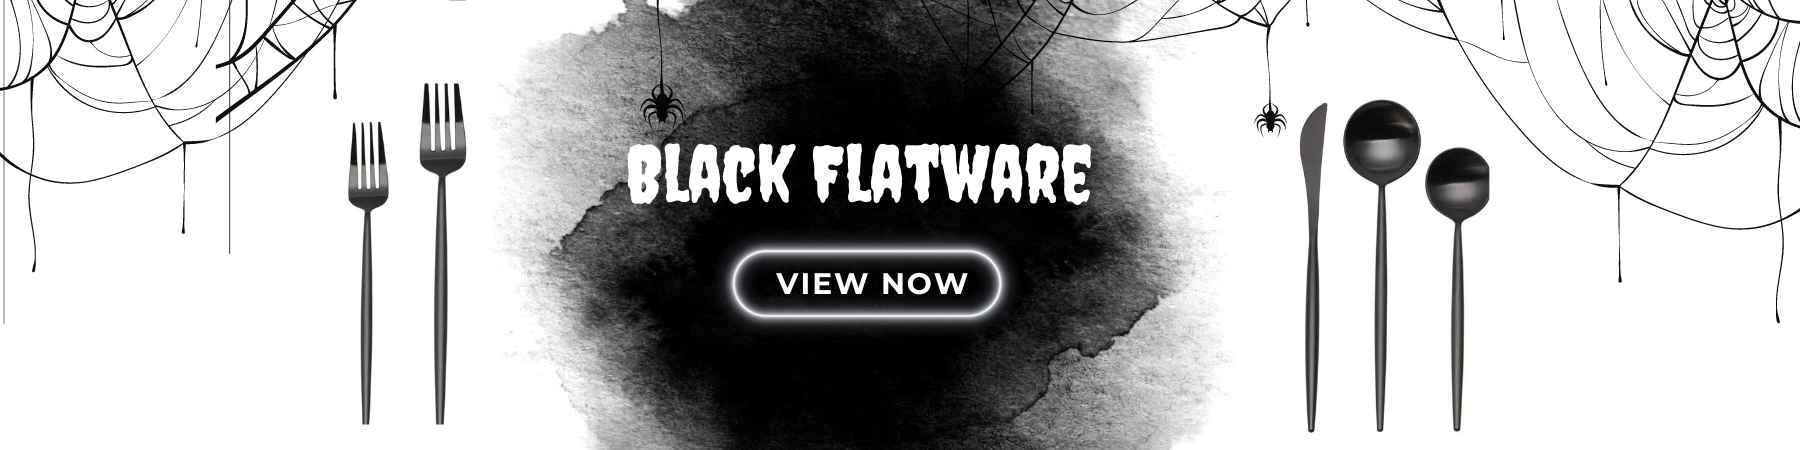 Black Flatware Rentals